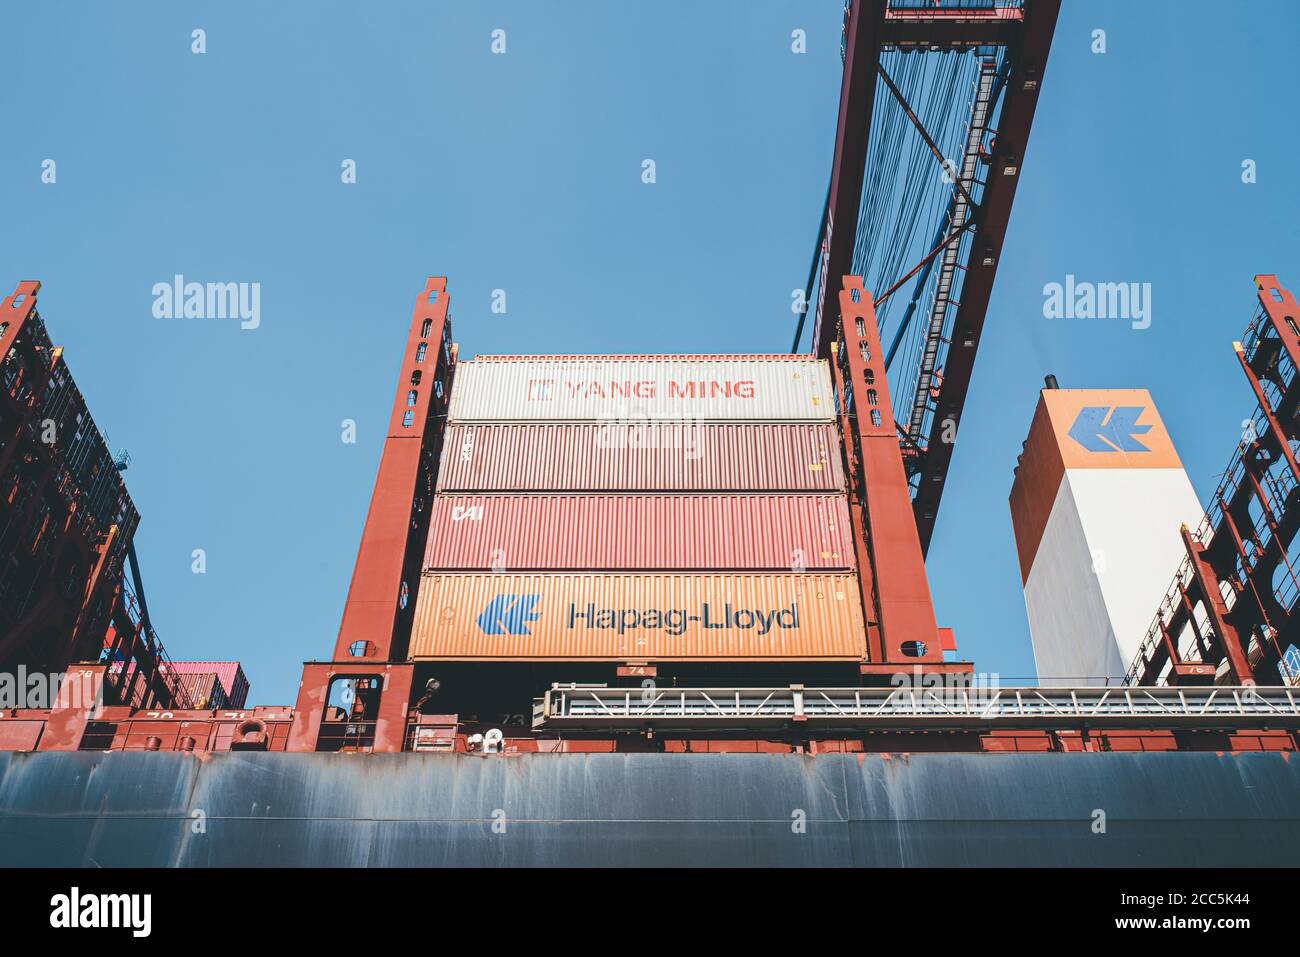 2020-08-16 Amburgo, Germania: Vista dall'angolo basso di grandi container su navi portacontainer operate da Hapag-Lloyd Foto Stock